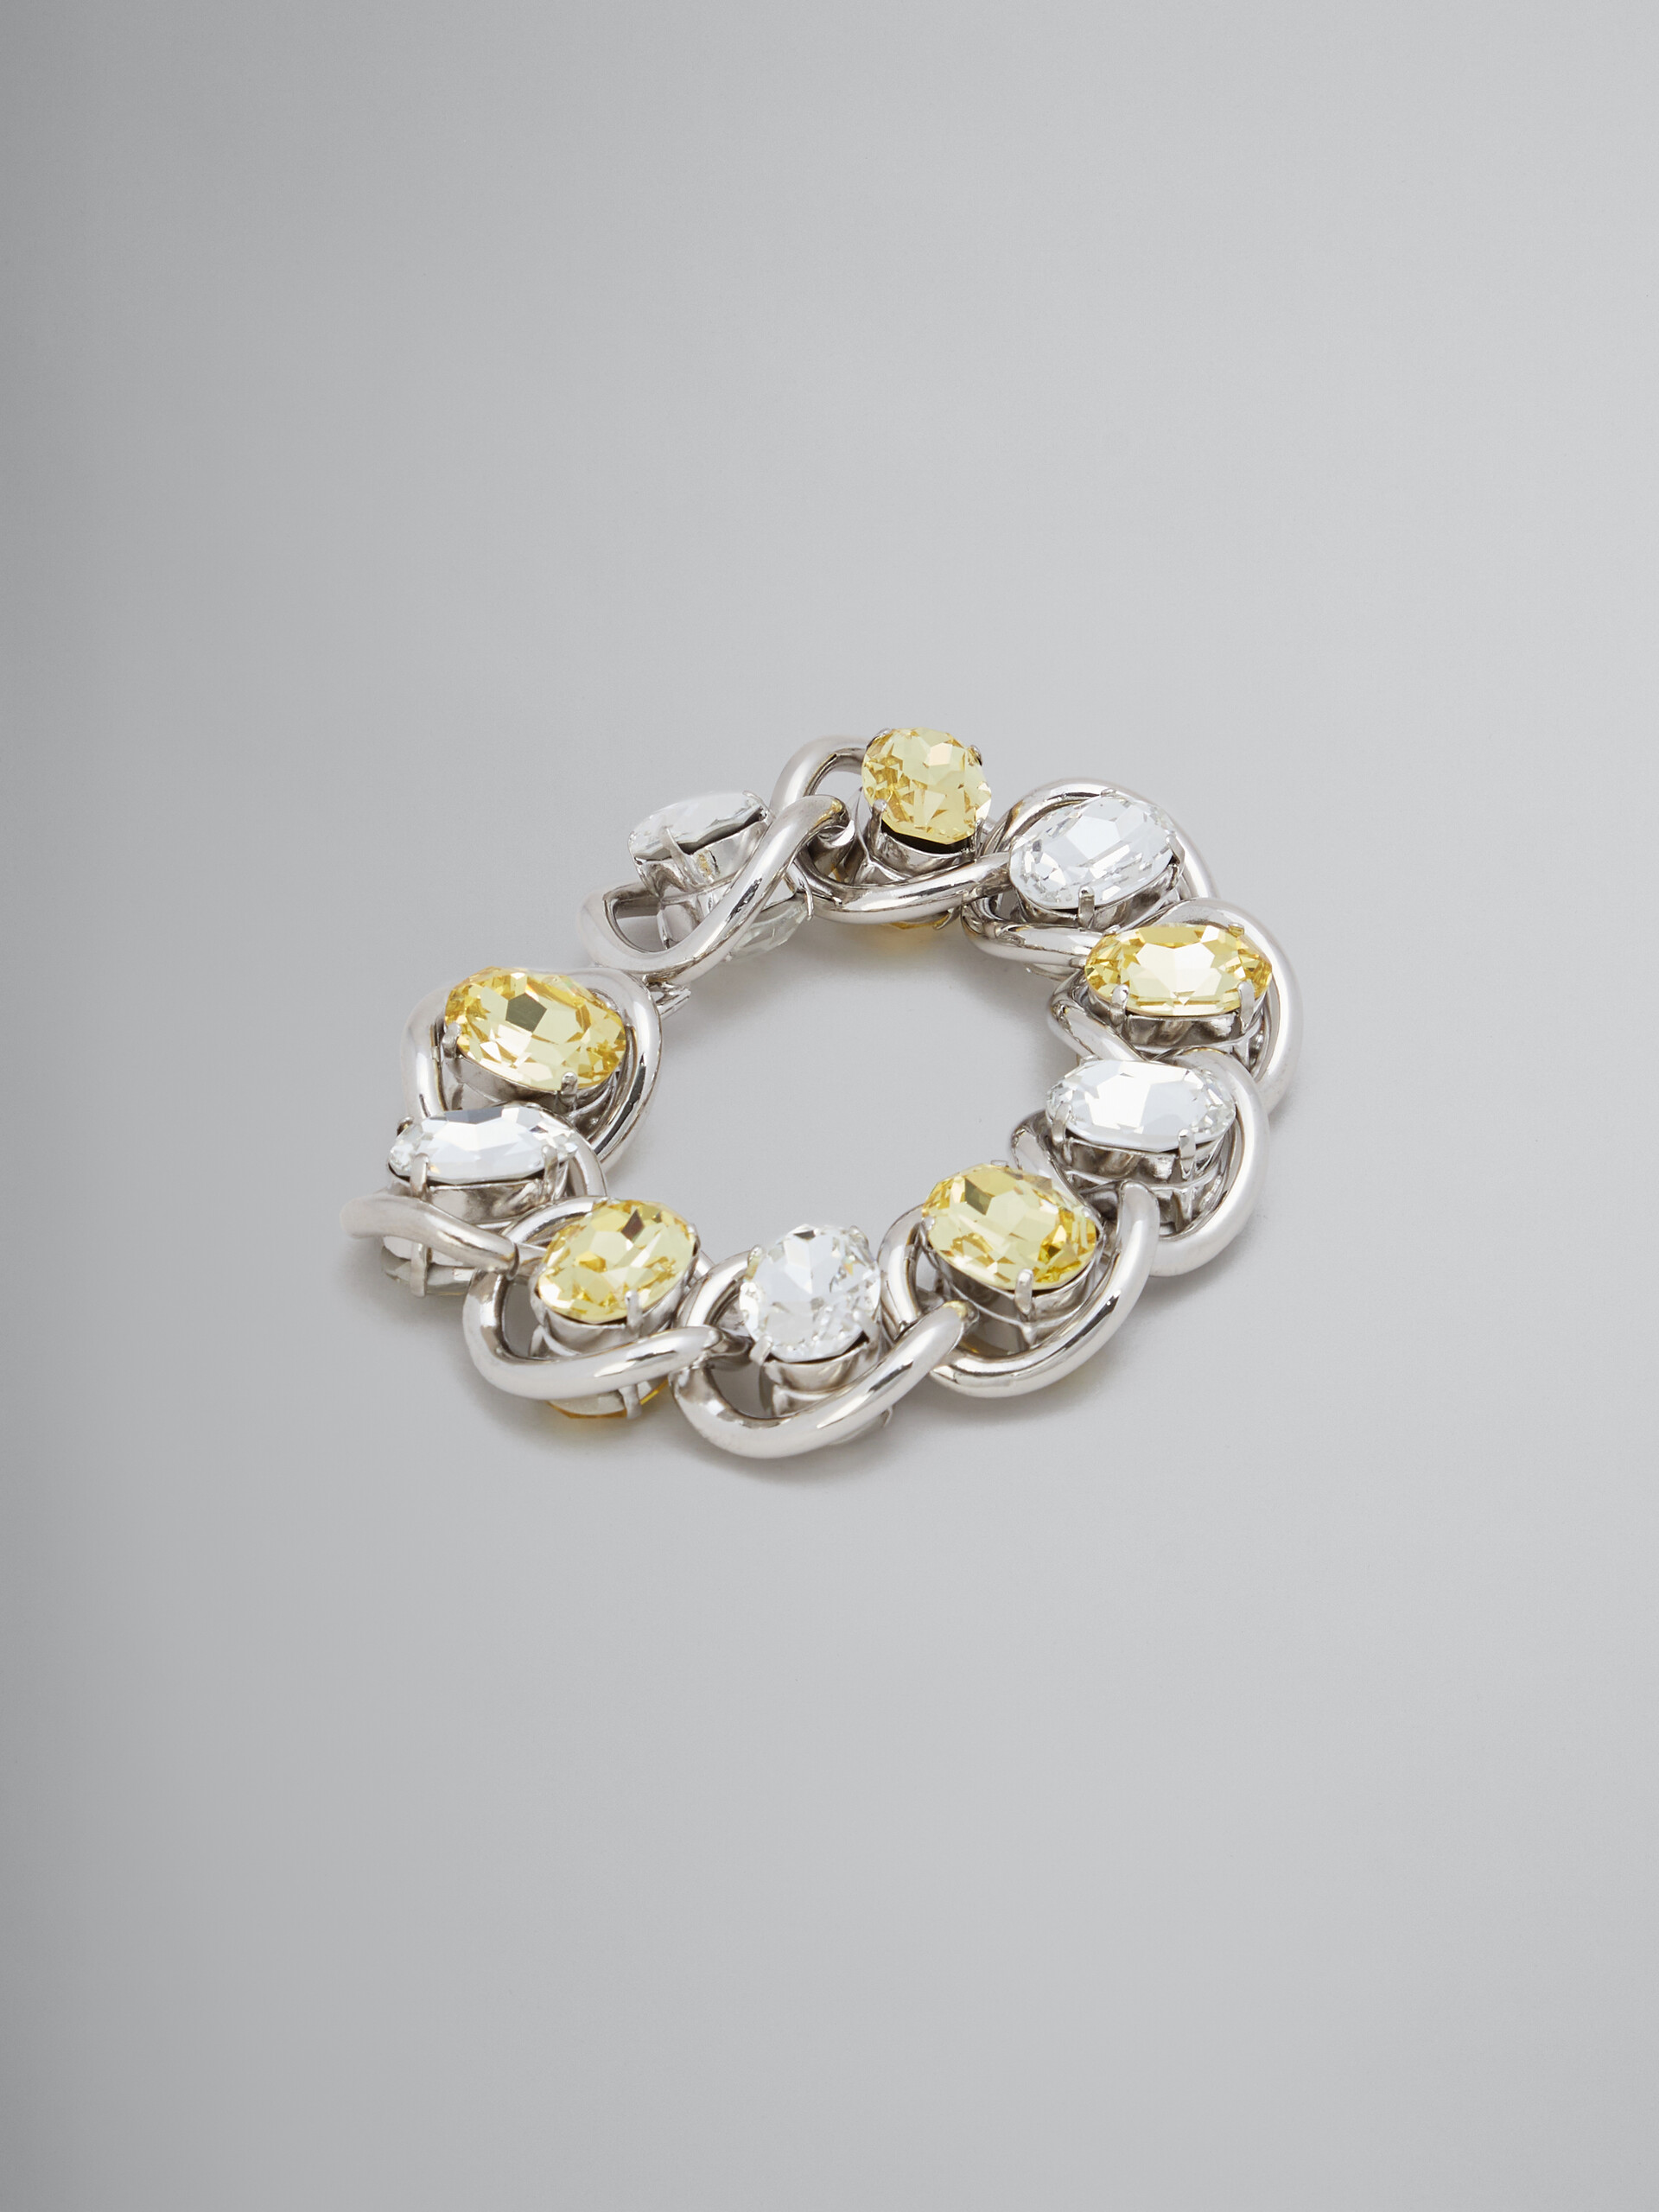 Bracelet en chaîne épaisse avec strass transparents et jaunes - Bracelets - Image 1